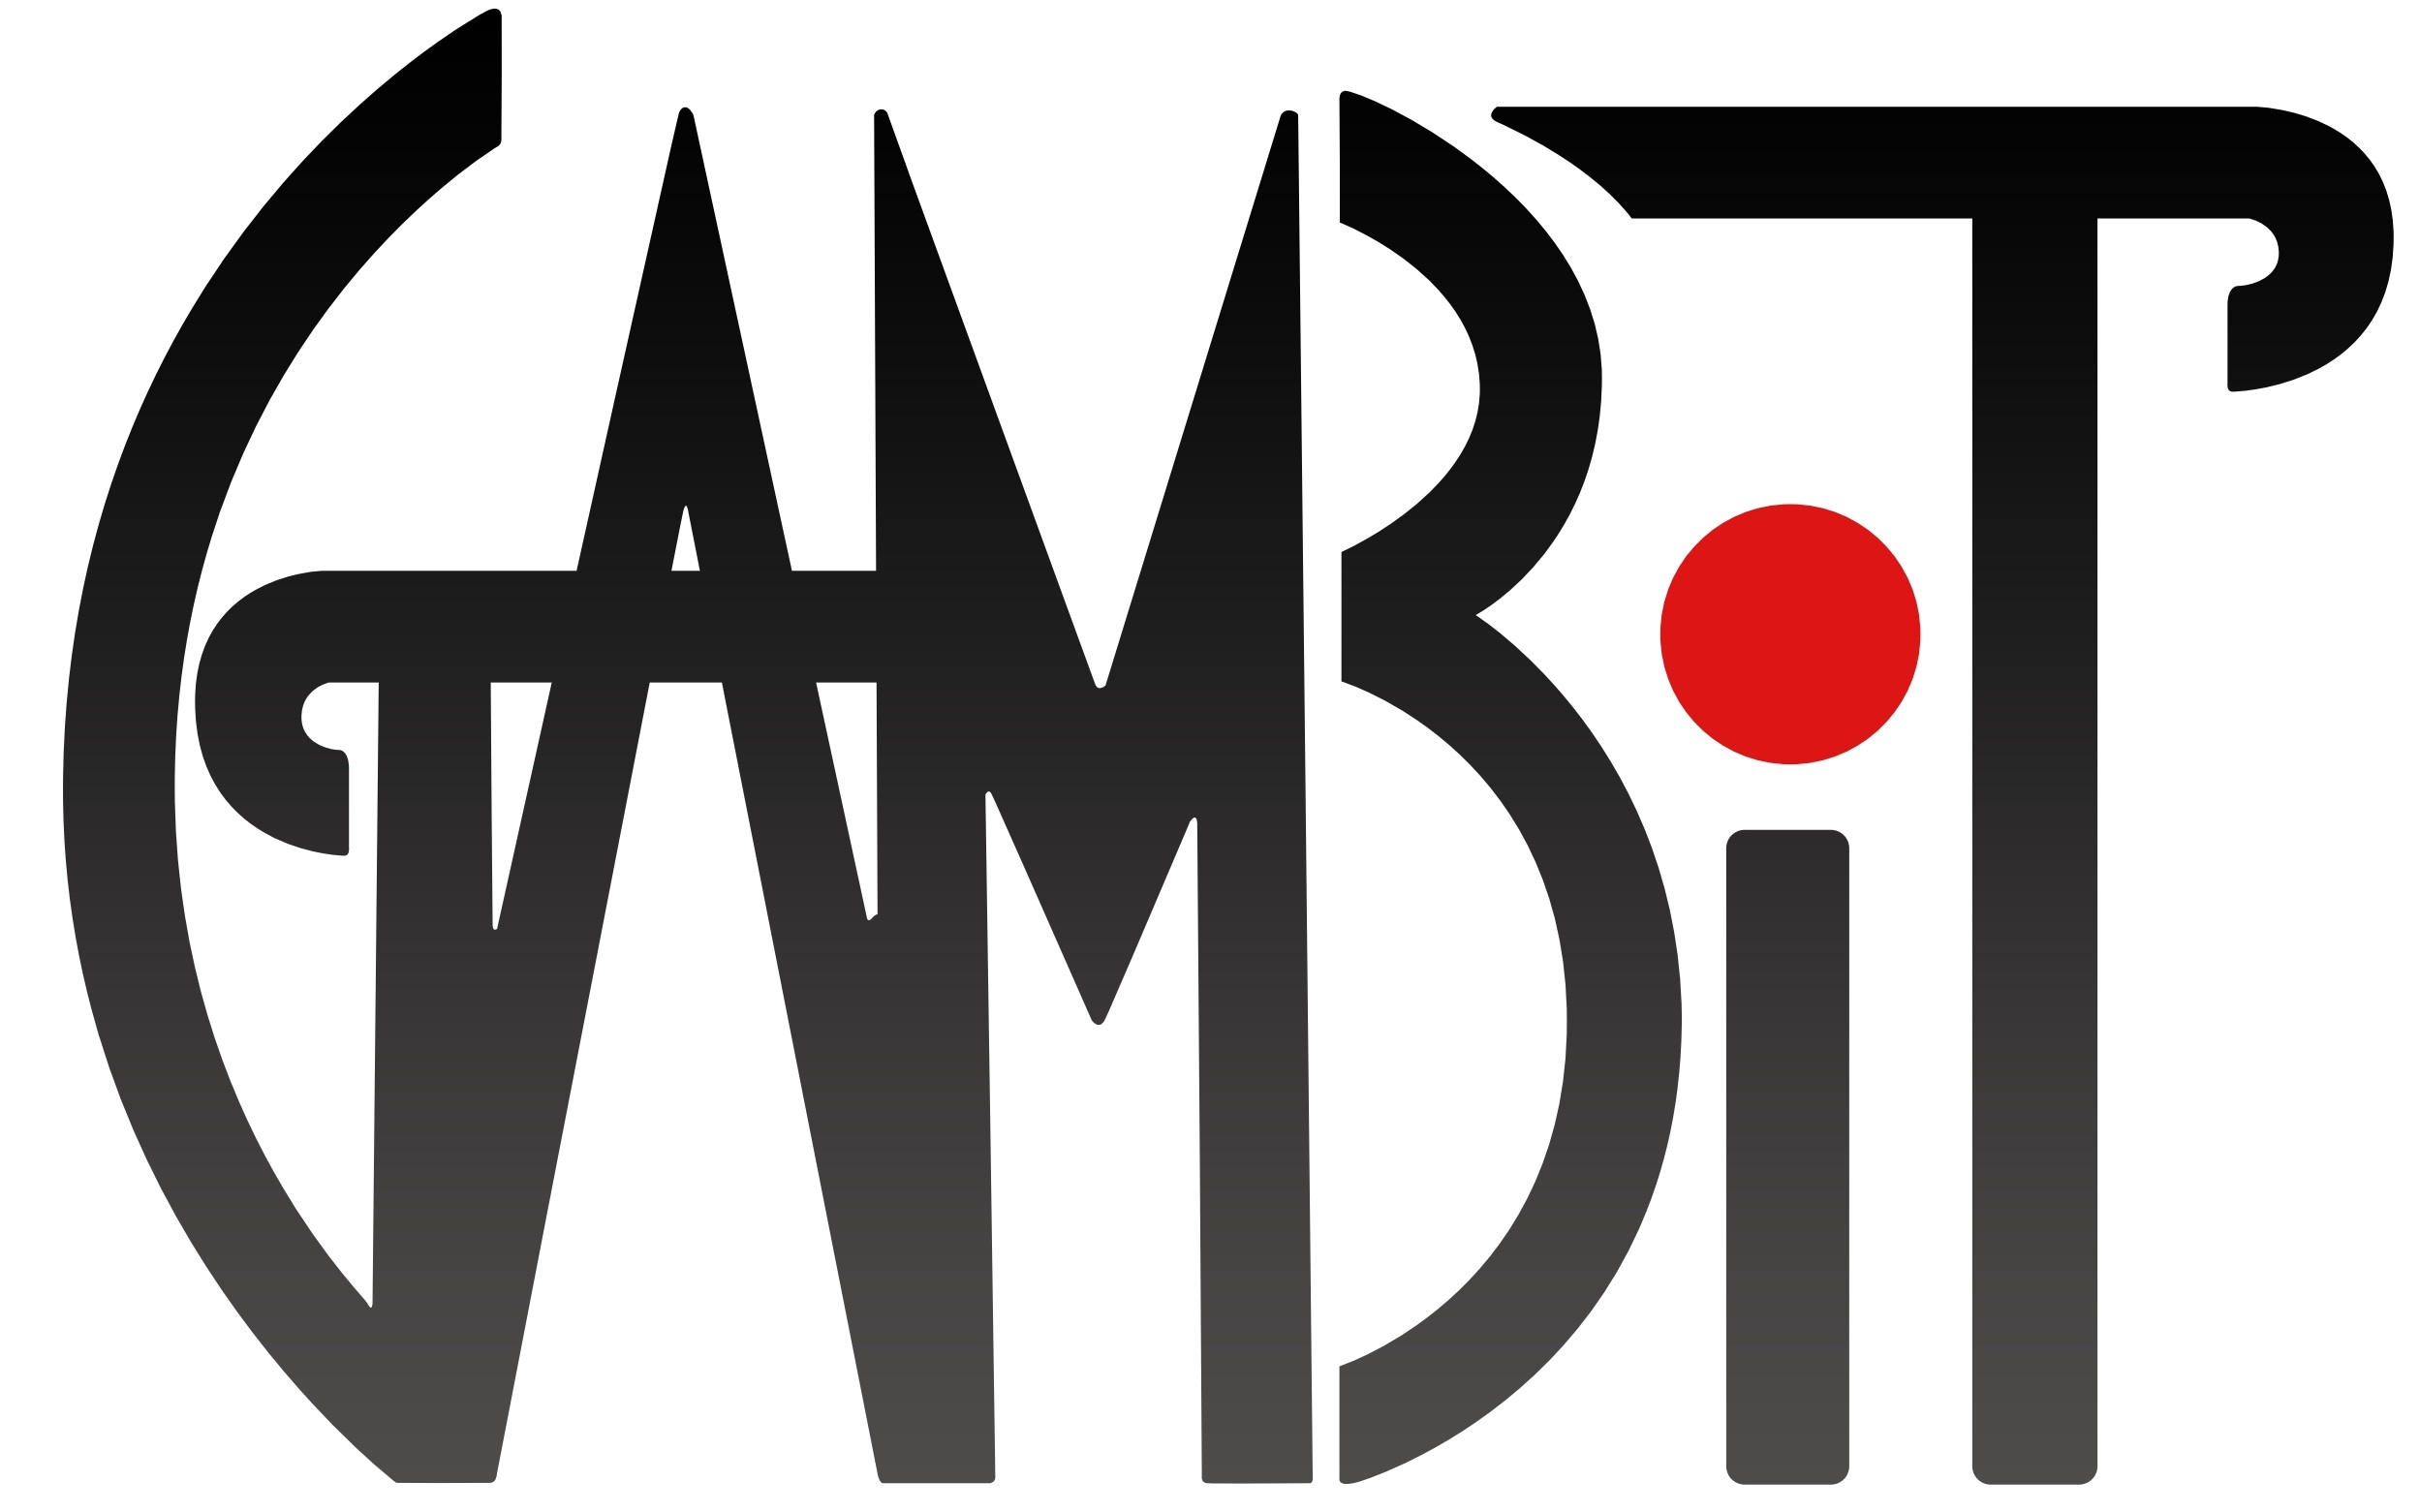 GAMBIT Logo.jpg df343e809c3d0a35cd7588d255da1649